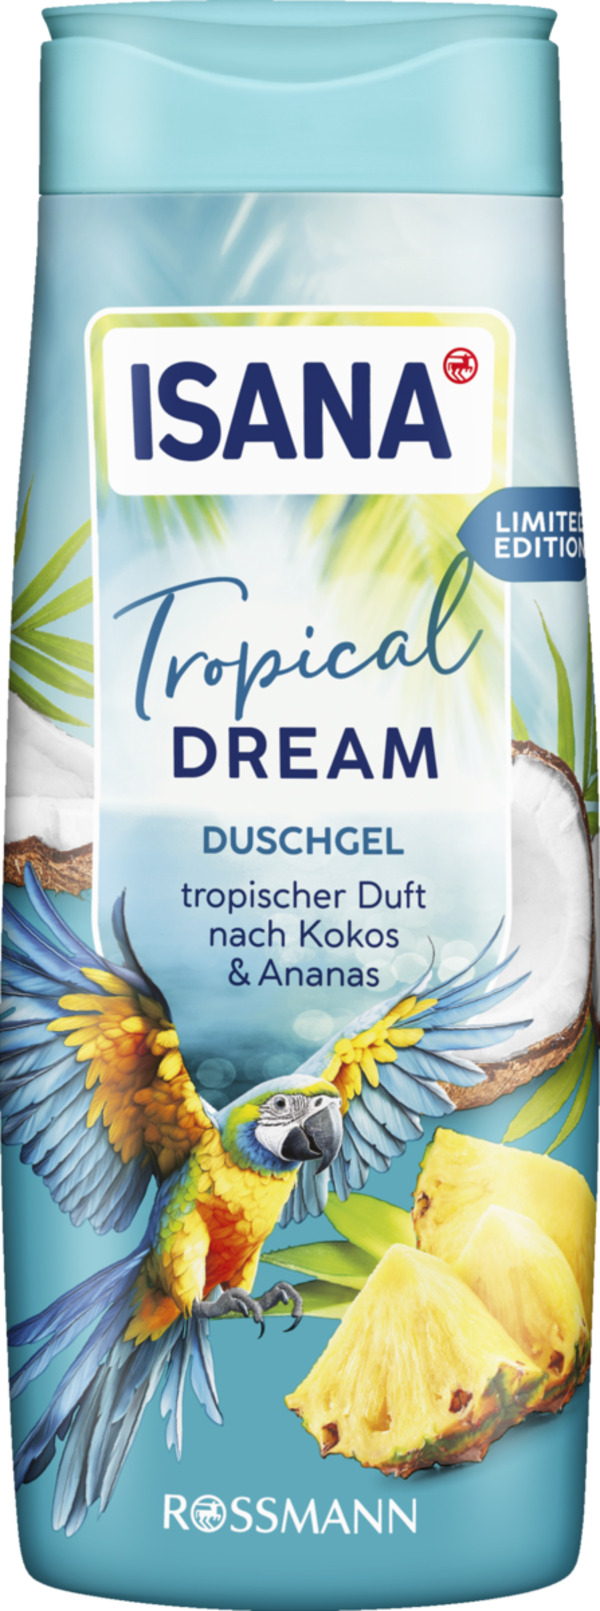 Bild 1 von ISANA Duschgel Tropical Dream